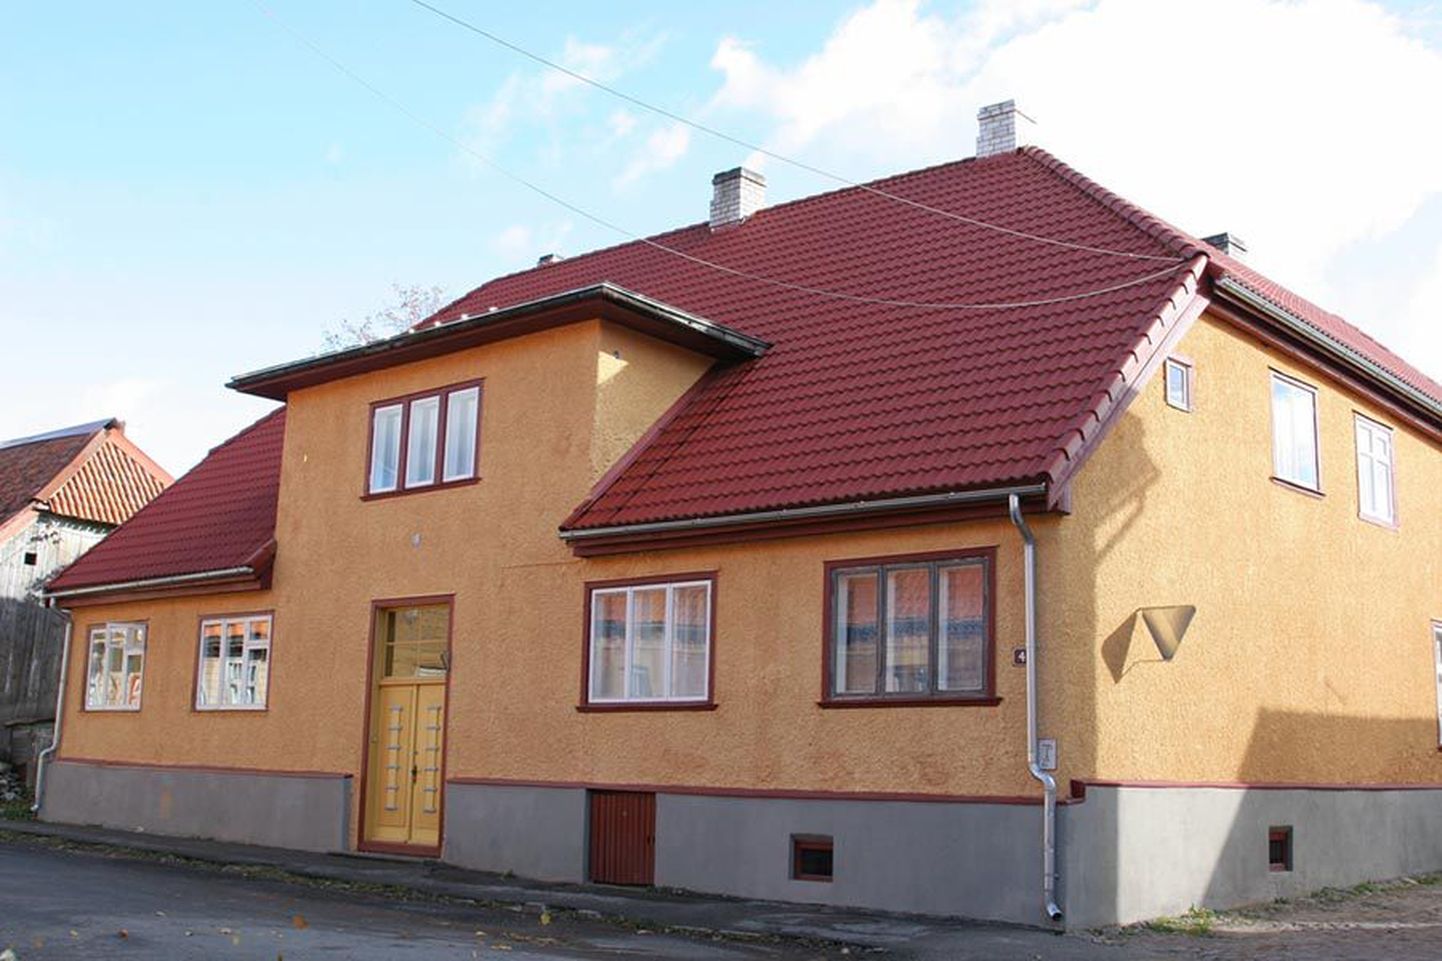 Lossi tänav 4 kuulub kaheksale perekonnale, kes on ühel meelel oma maja nägusaks värvinud. Neist Helve Plümberg laskis oma rahaga valmistada ukse, mis üle-eelmisel sajandil ehitatud hoonele väga hästi sobib.